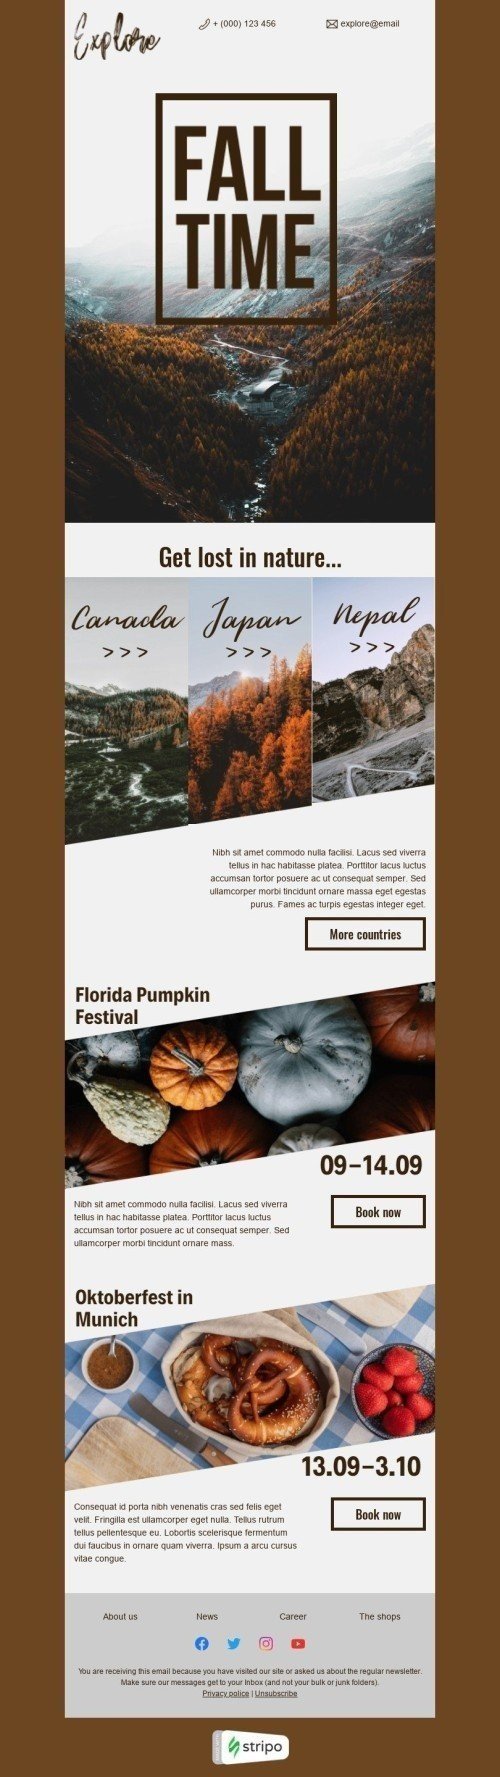 Plantilla de correo electrónico «Explora el otoño» de Primer dia de otoño para la industria de Turismo Vista de escritorio